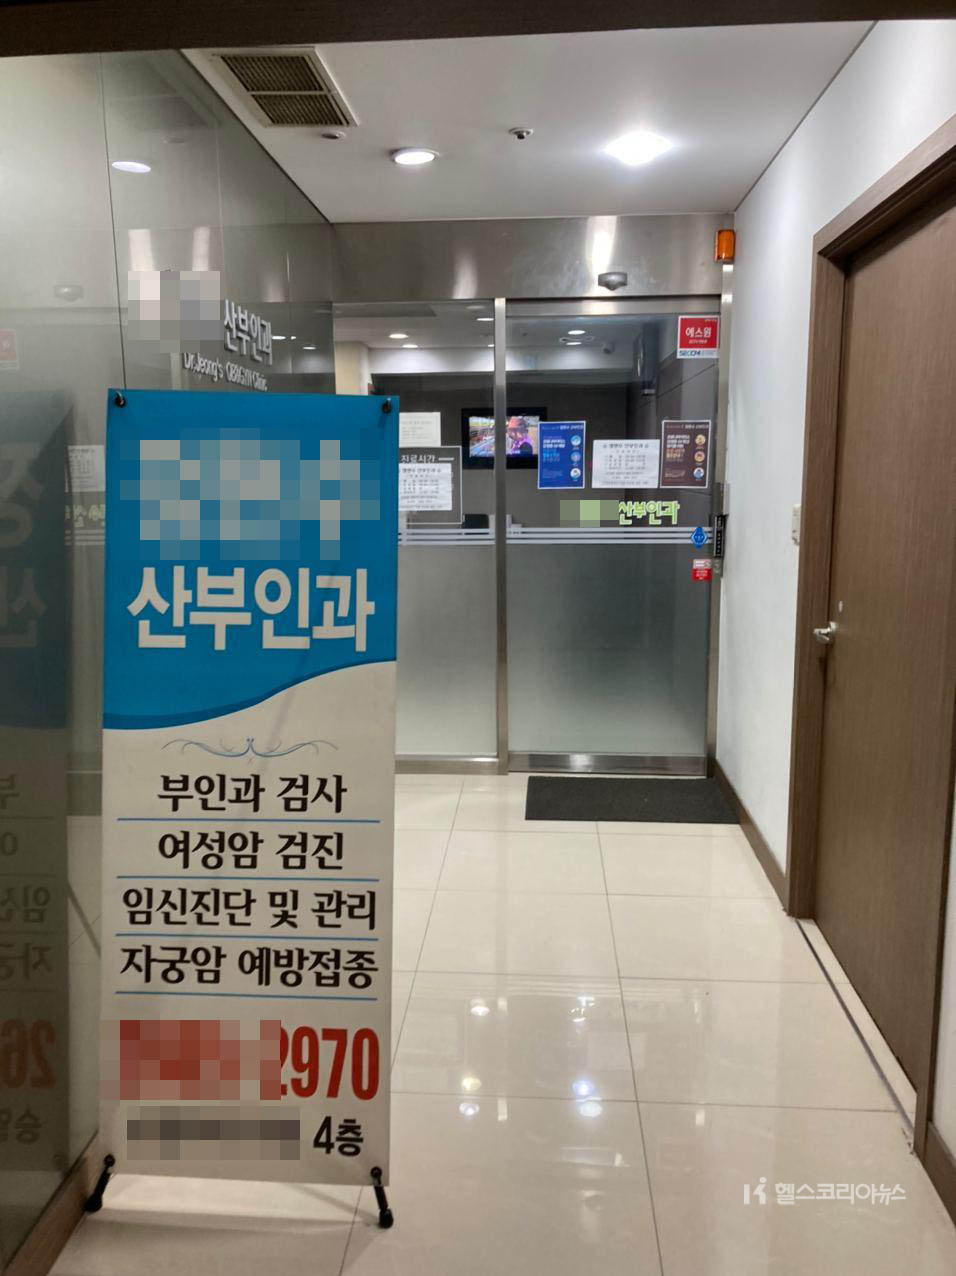 의료계 2차 총파업 2일째인 27일 아침 서울 시내 대부분의 동네병원(개원의)은 정상진료를 하는 것으로 나타났다. 병원마다 아침 개원 준비에 분주한 모습이다.